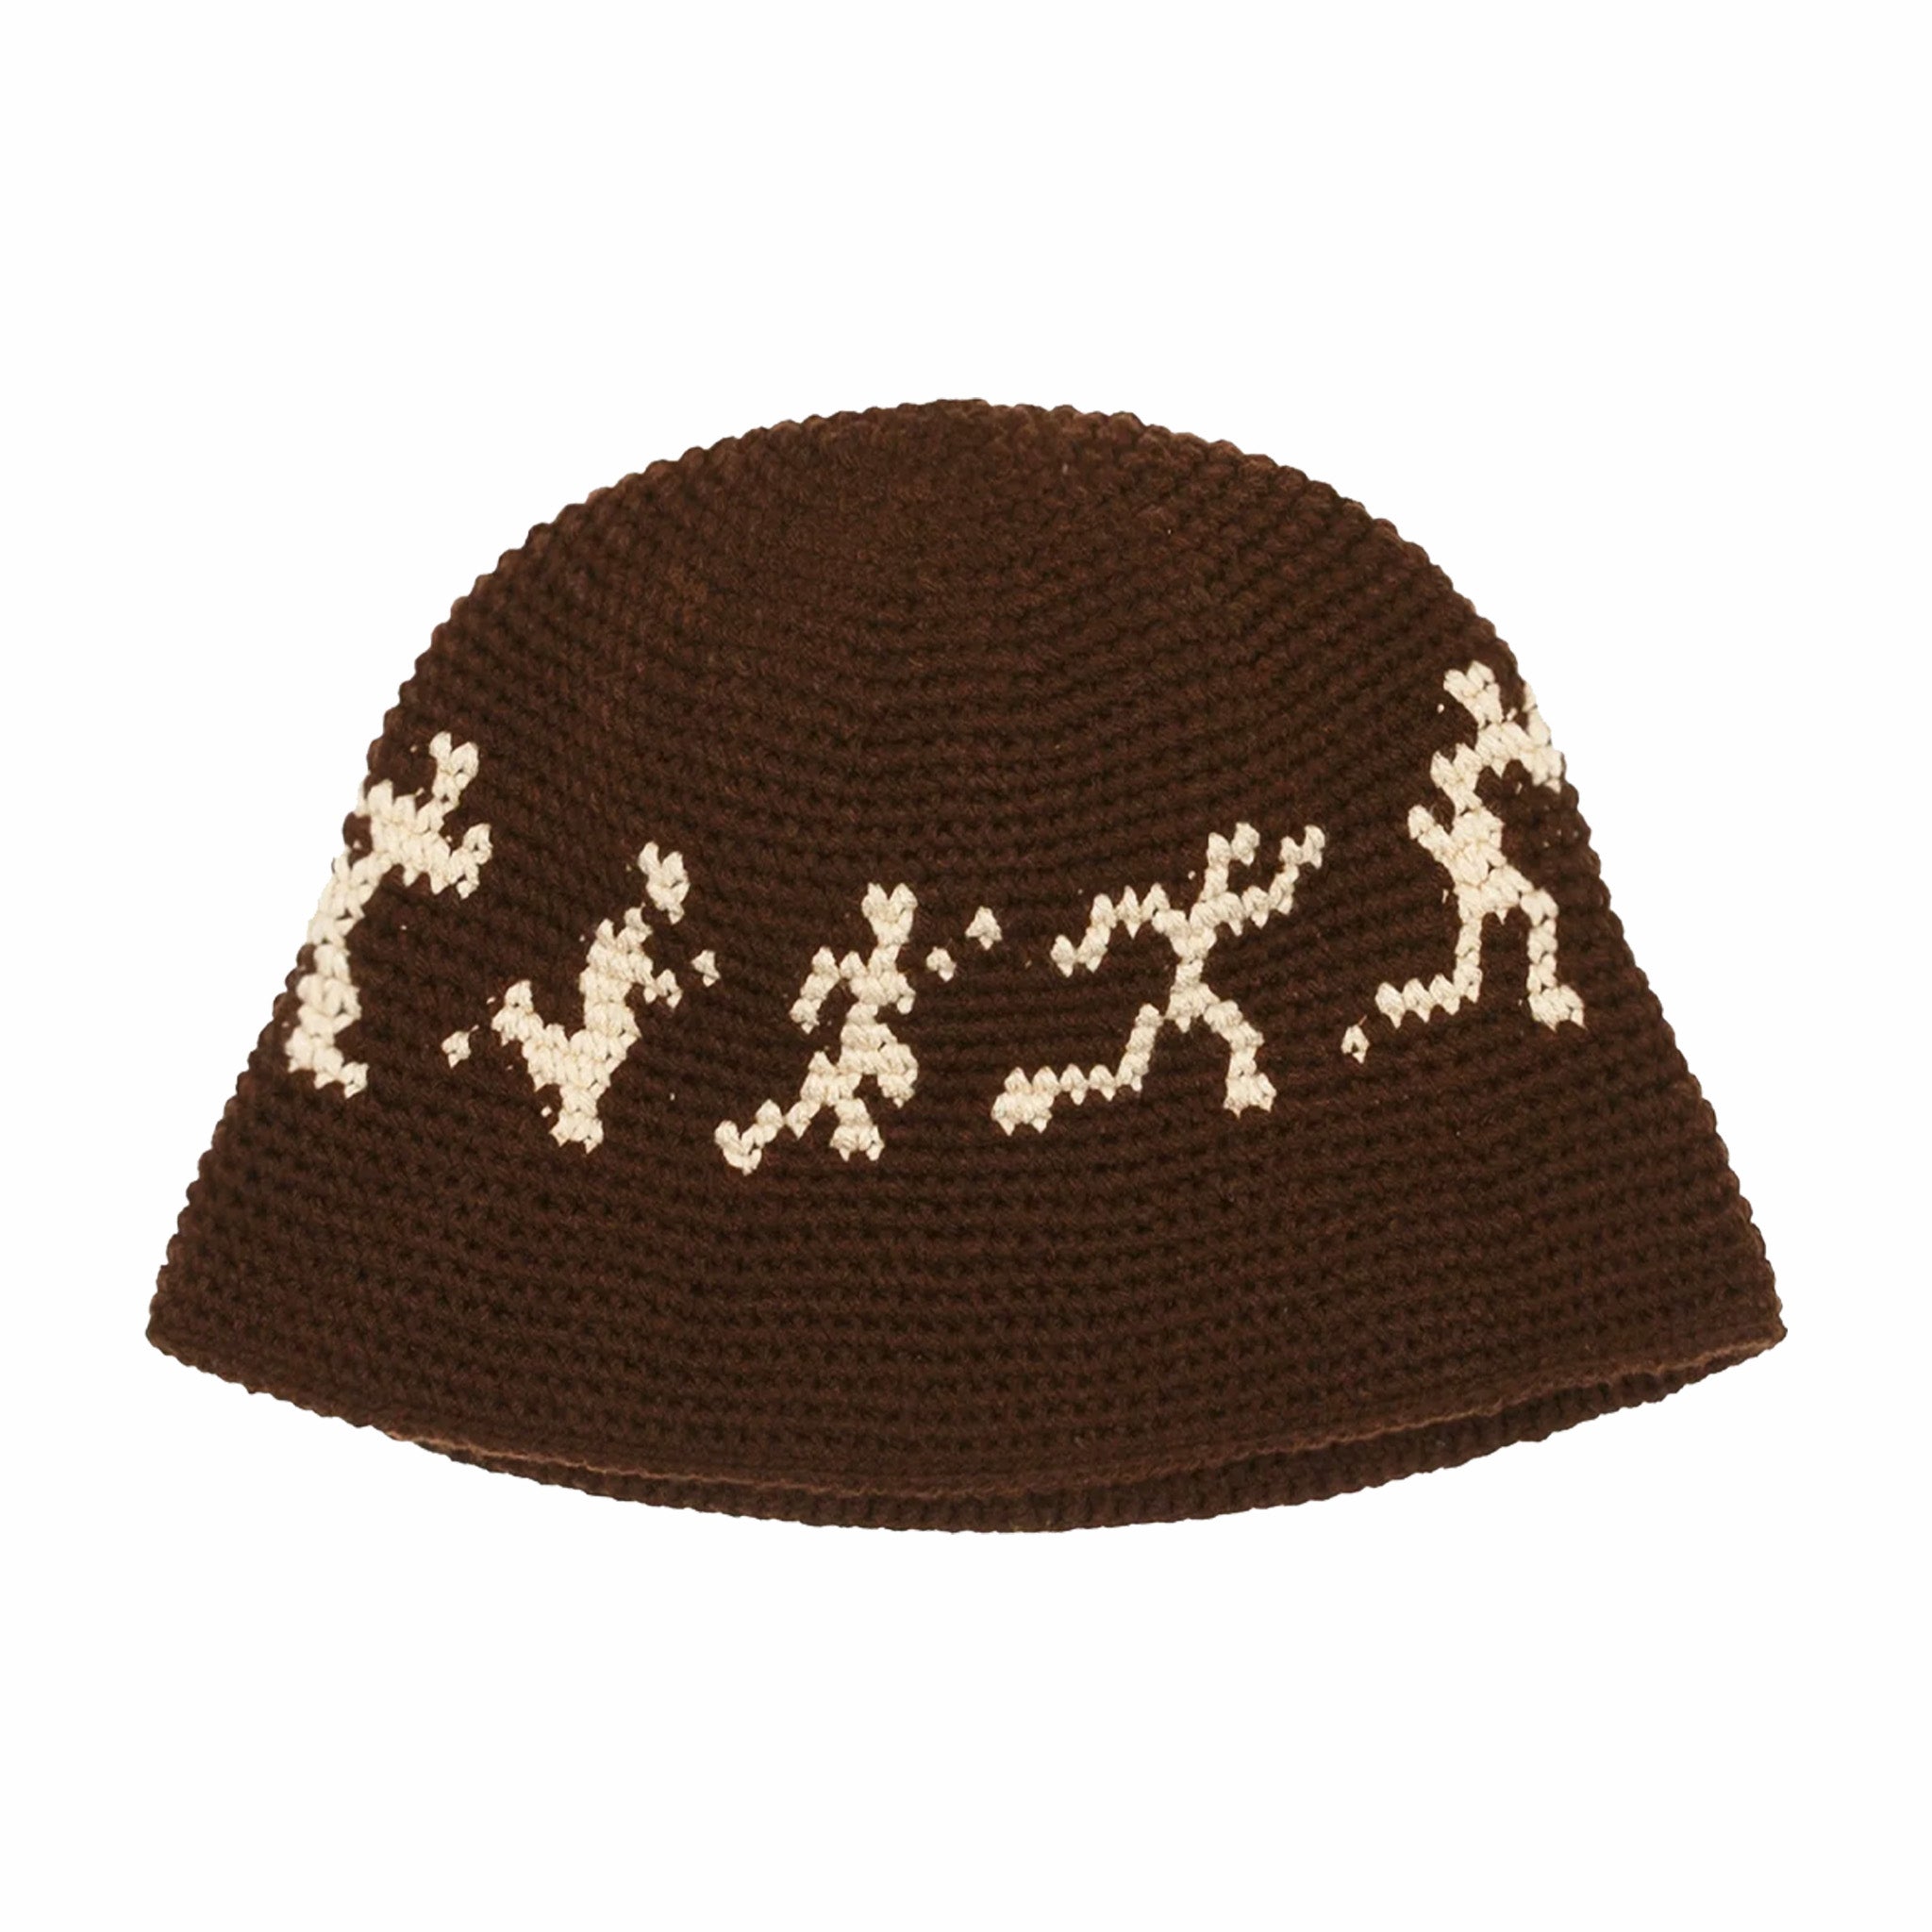 KidSUper Running Guys Crochet Hat (Brown) - August Shop